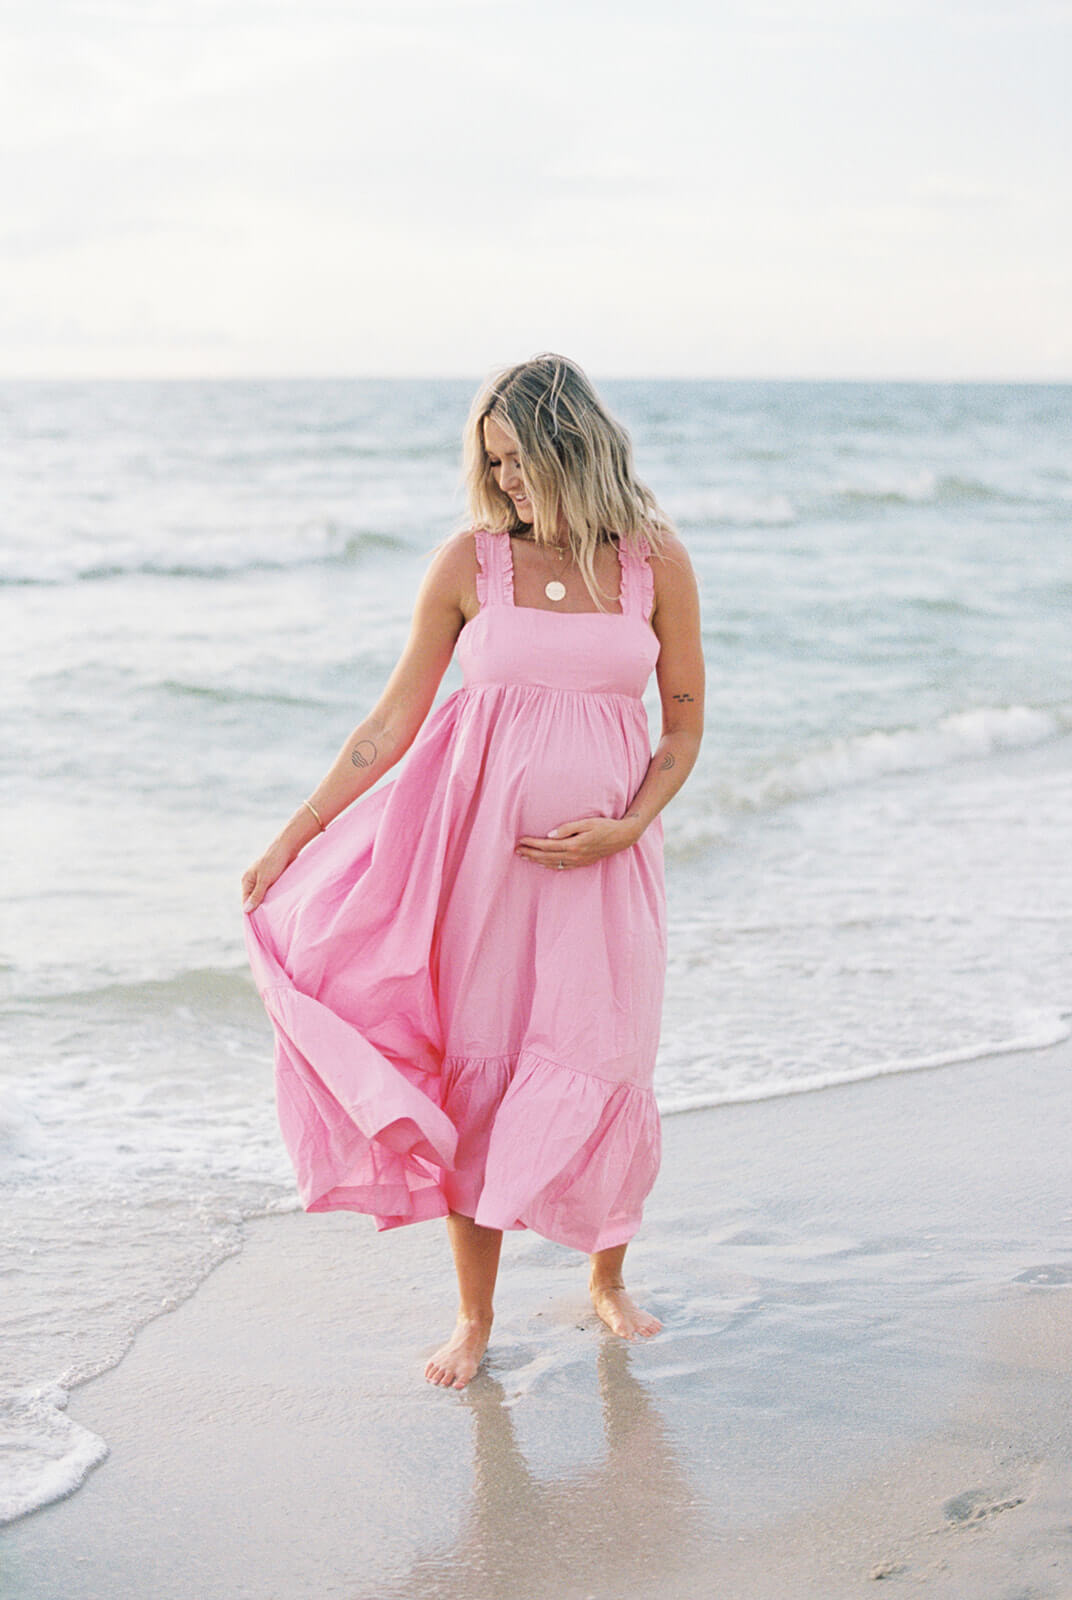 Naples Photographer | Beach Maternity Photos